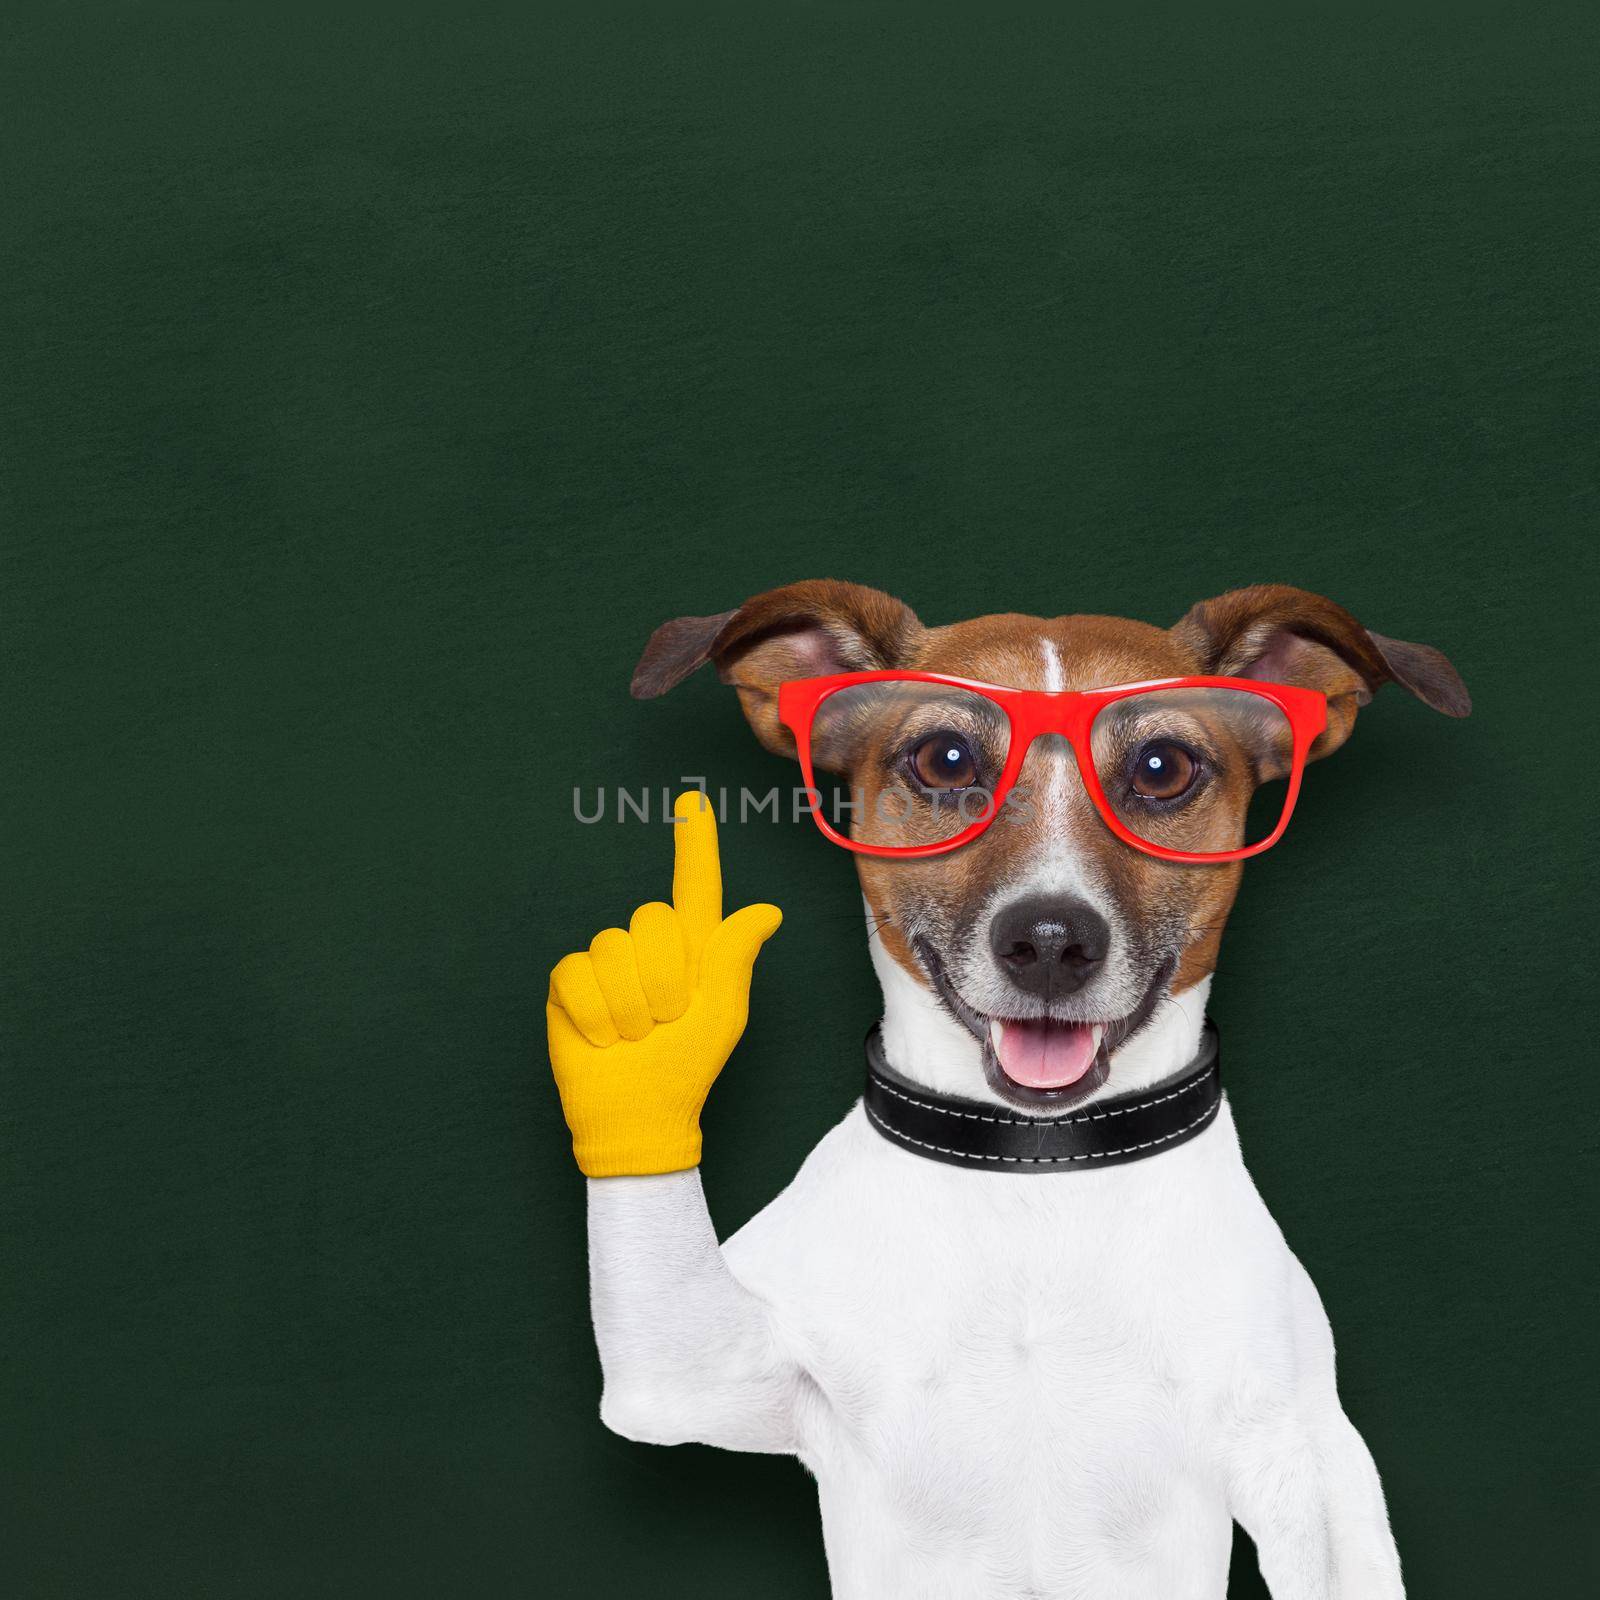 smart school dog by Brosch